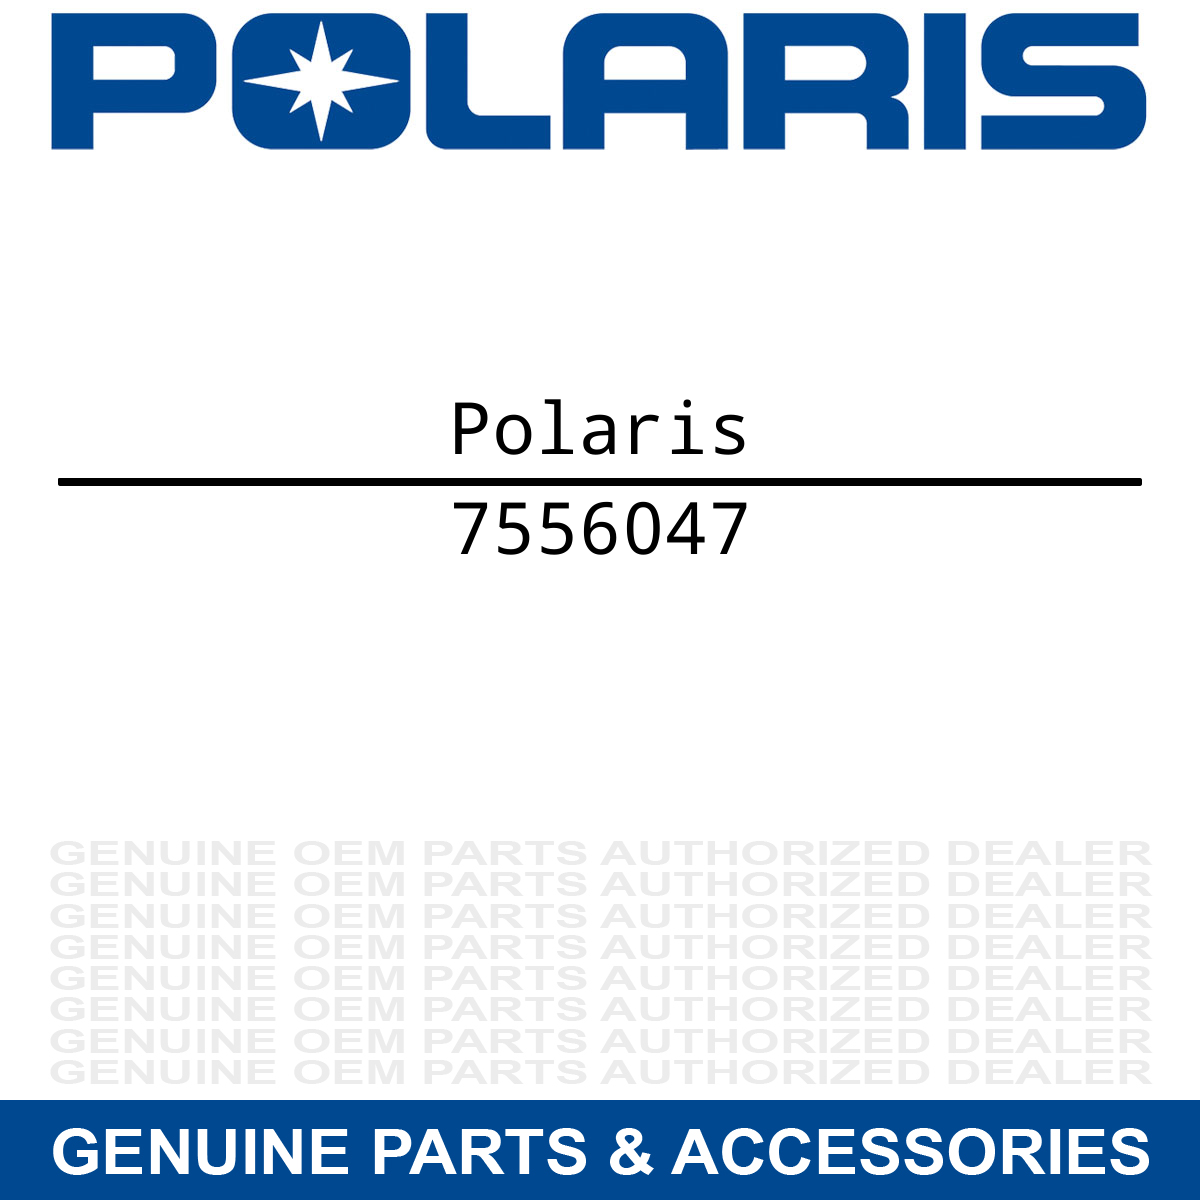 Polaris 7556047 Cable End Seal Washer Scrambler Xplorer Trail-Blazer Sport 250 2X4 400 400L Blazer